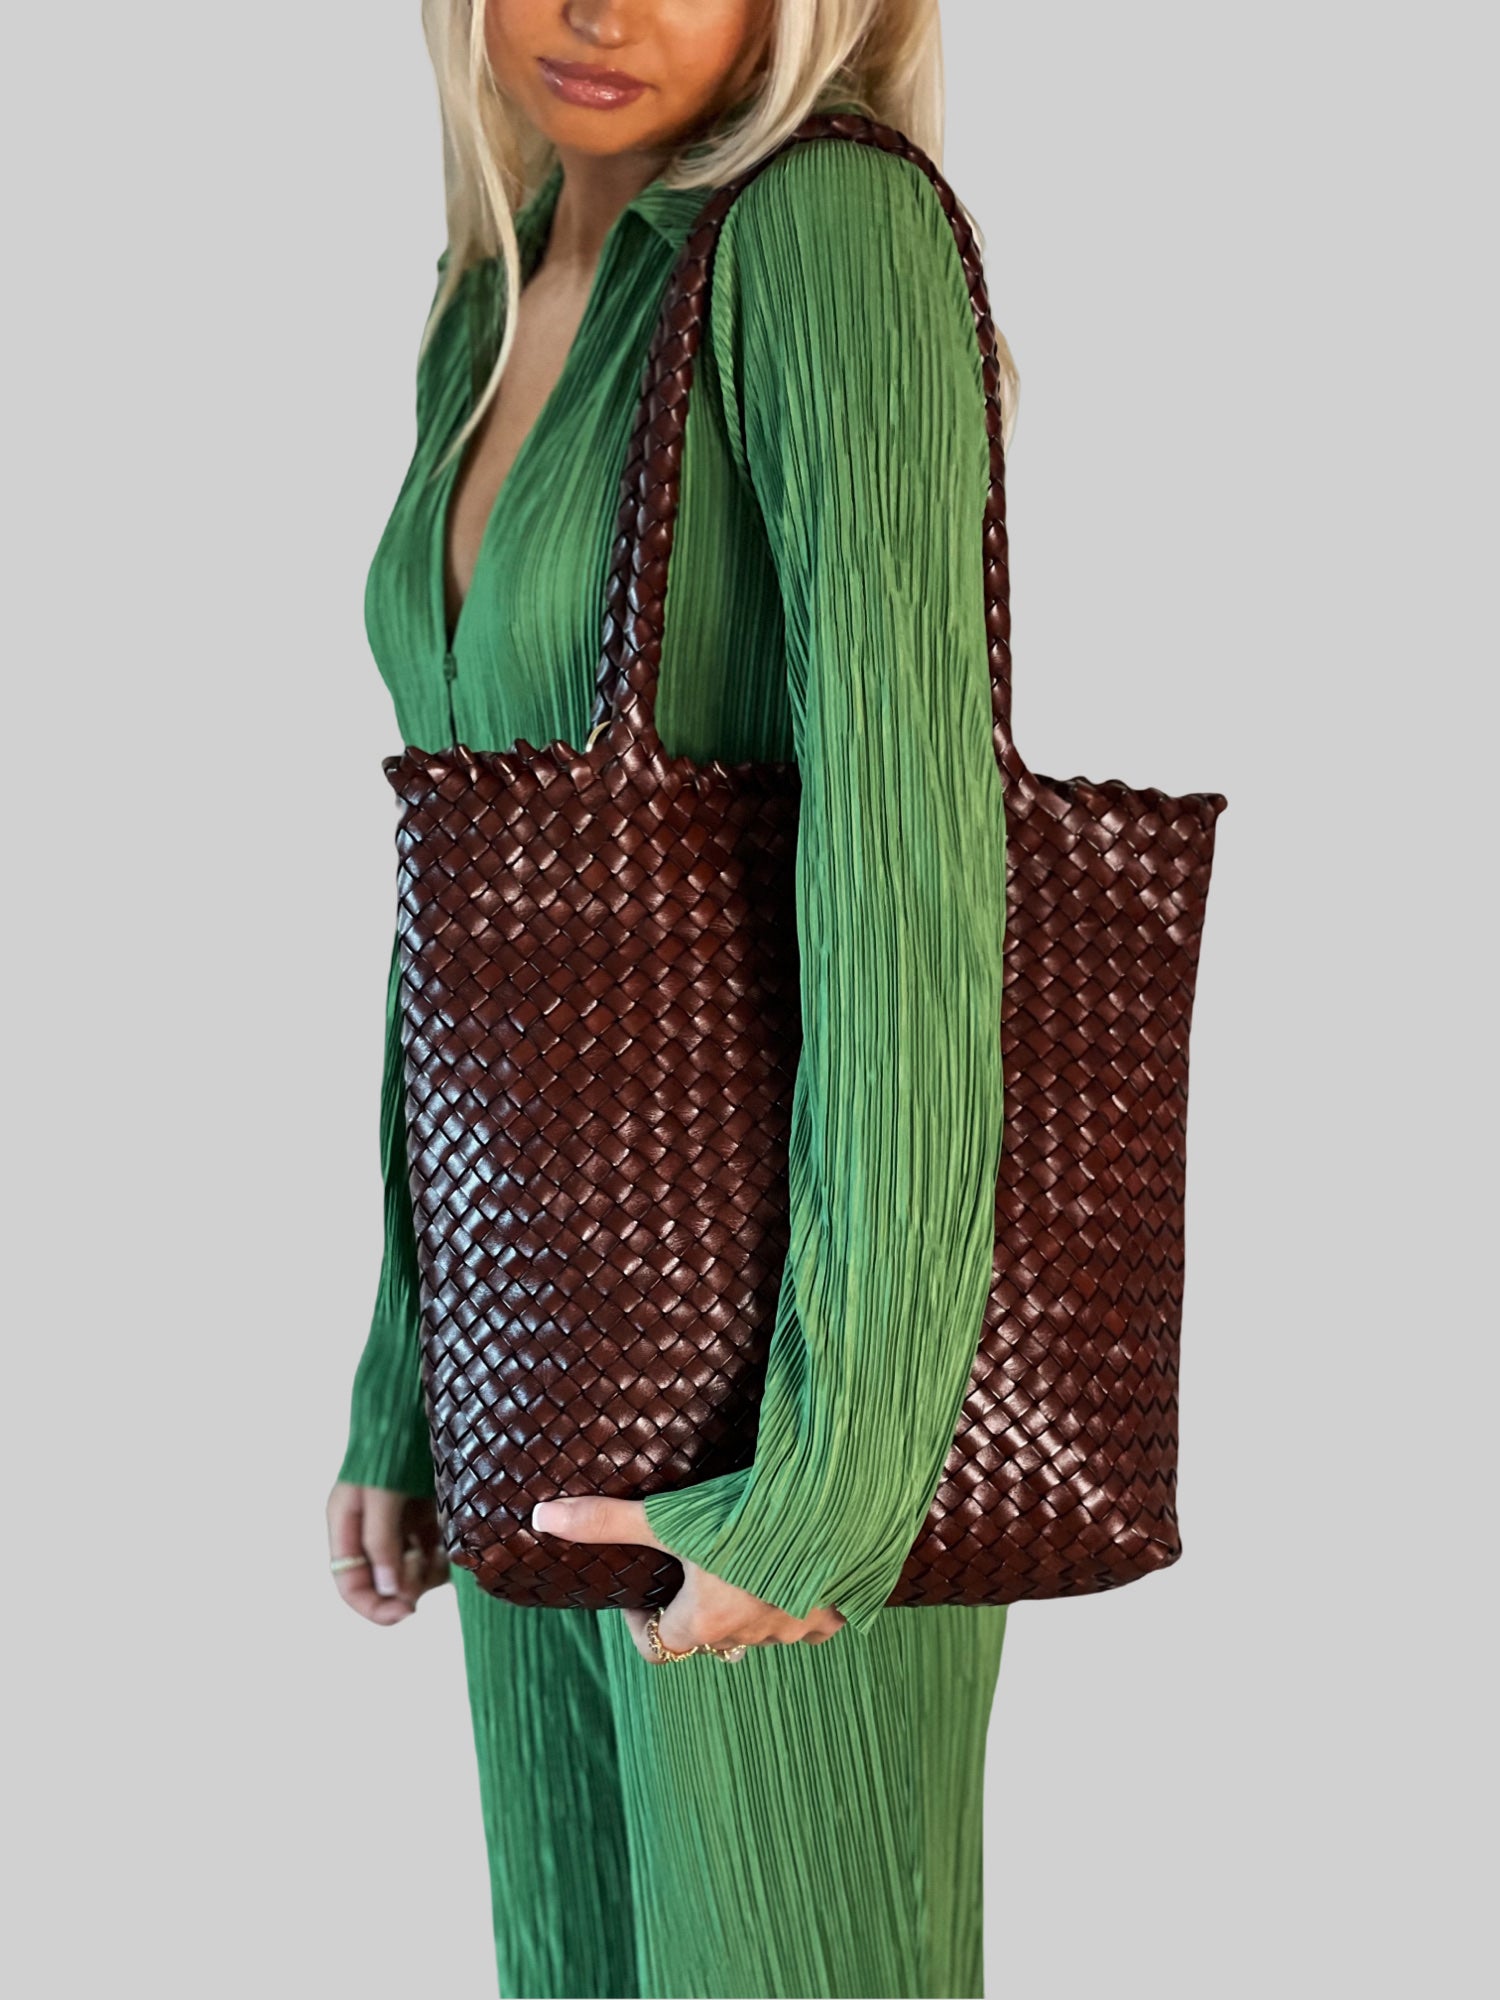 En kvinne i limegrønn silkedress bærer en Oak Ribichini Woodstock Limited Babe-veske. Vesken gir en stilig kontrast til det livlige antrekket hennes.